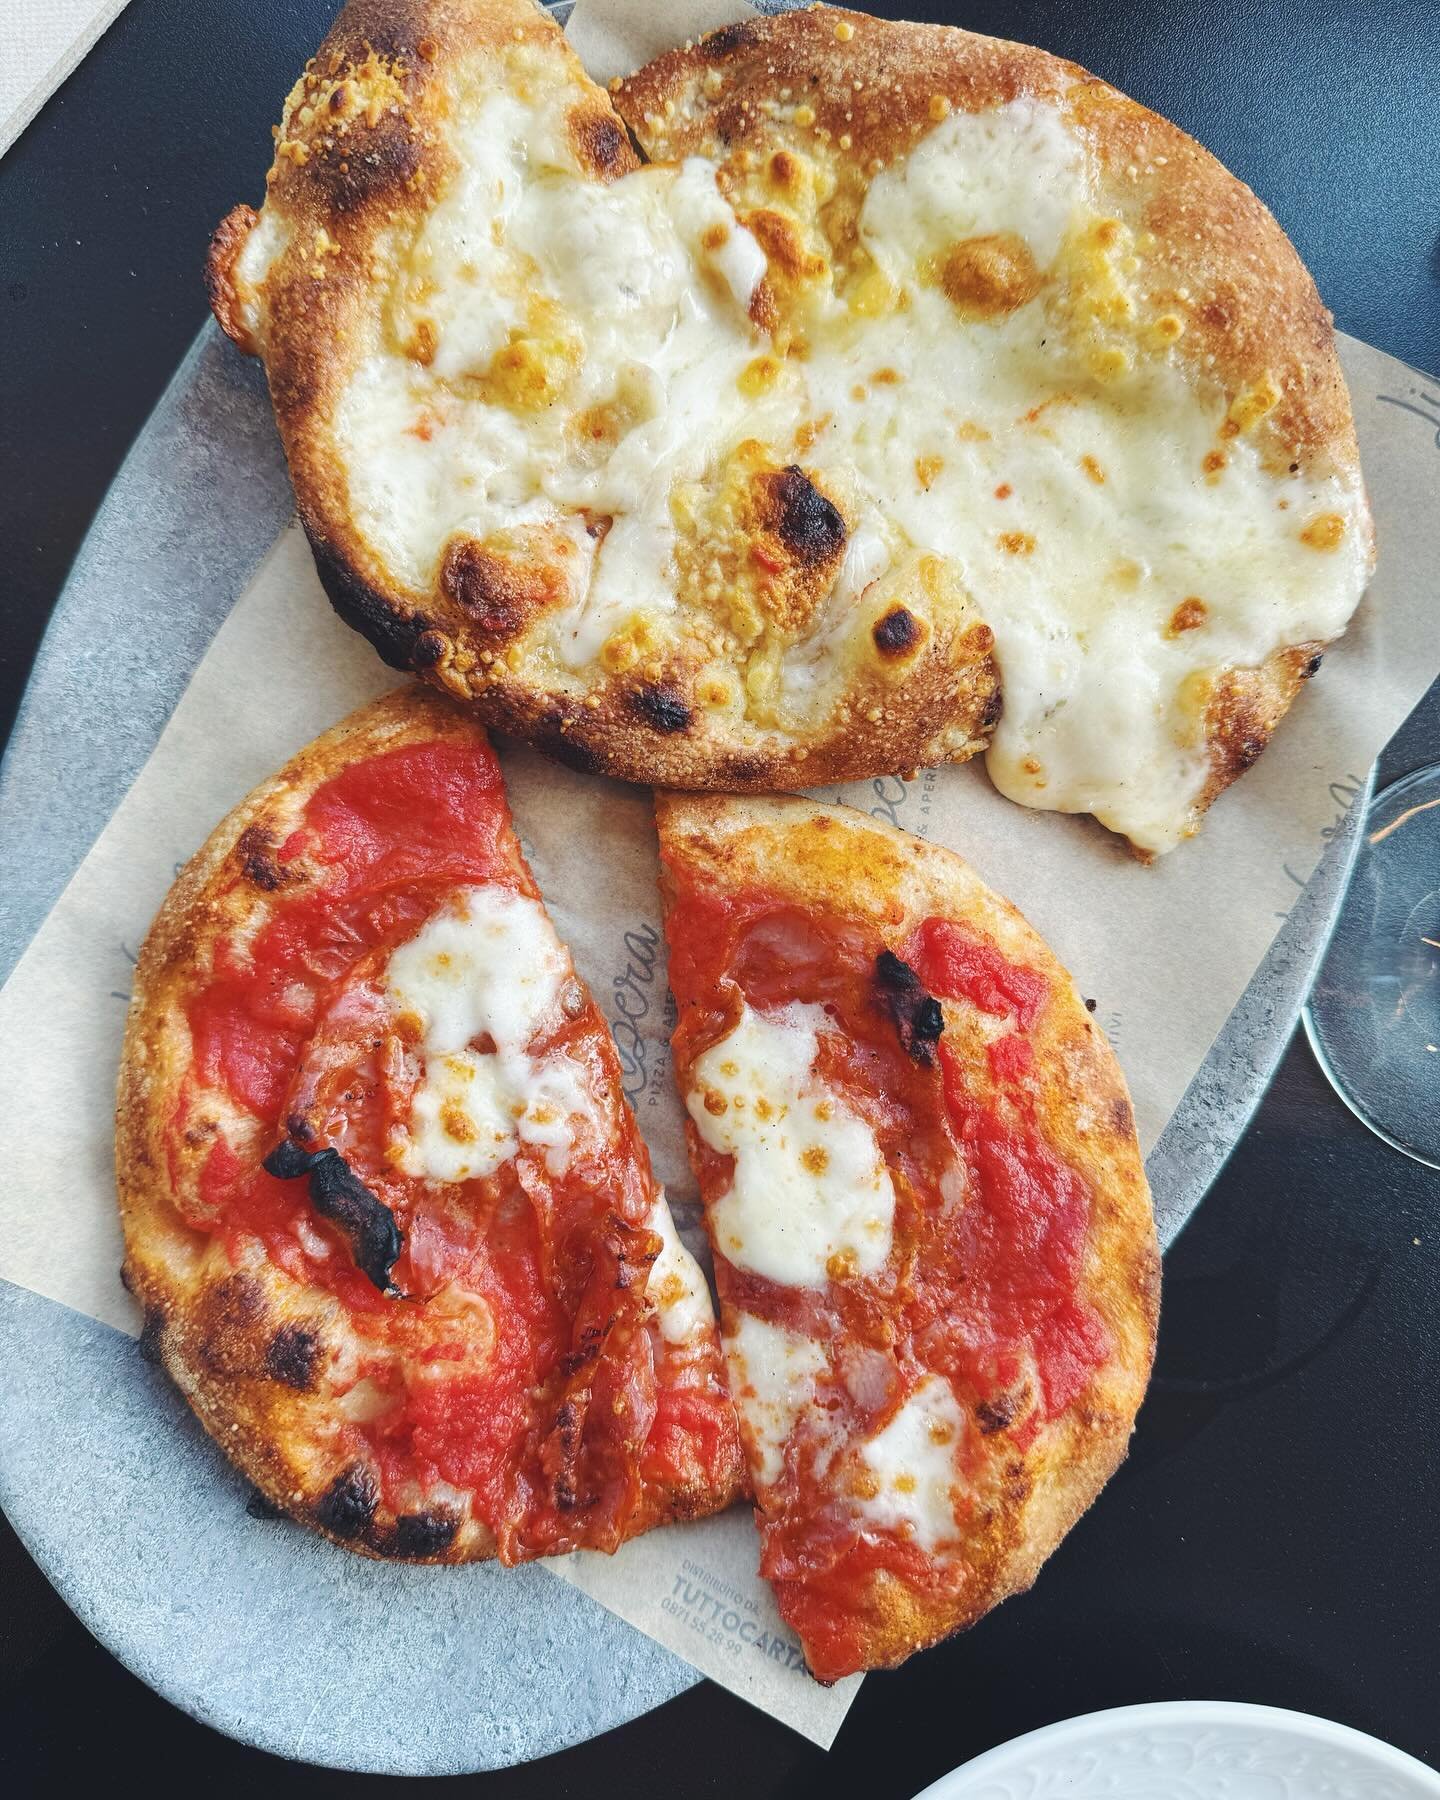 Pizza 🍕 from our local spot in Penne, @liberapizzapenne:

1. Pastorella (mixed Abruzzo cheeses) and Piccante d&rsquo;Abruzzo (tomato, fiordilatte, ventricina piccante) ❤️🇮🇹

2. Voltigno (tomato, fiordilatte, sausage, mushrooms, olives); Alicetta (